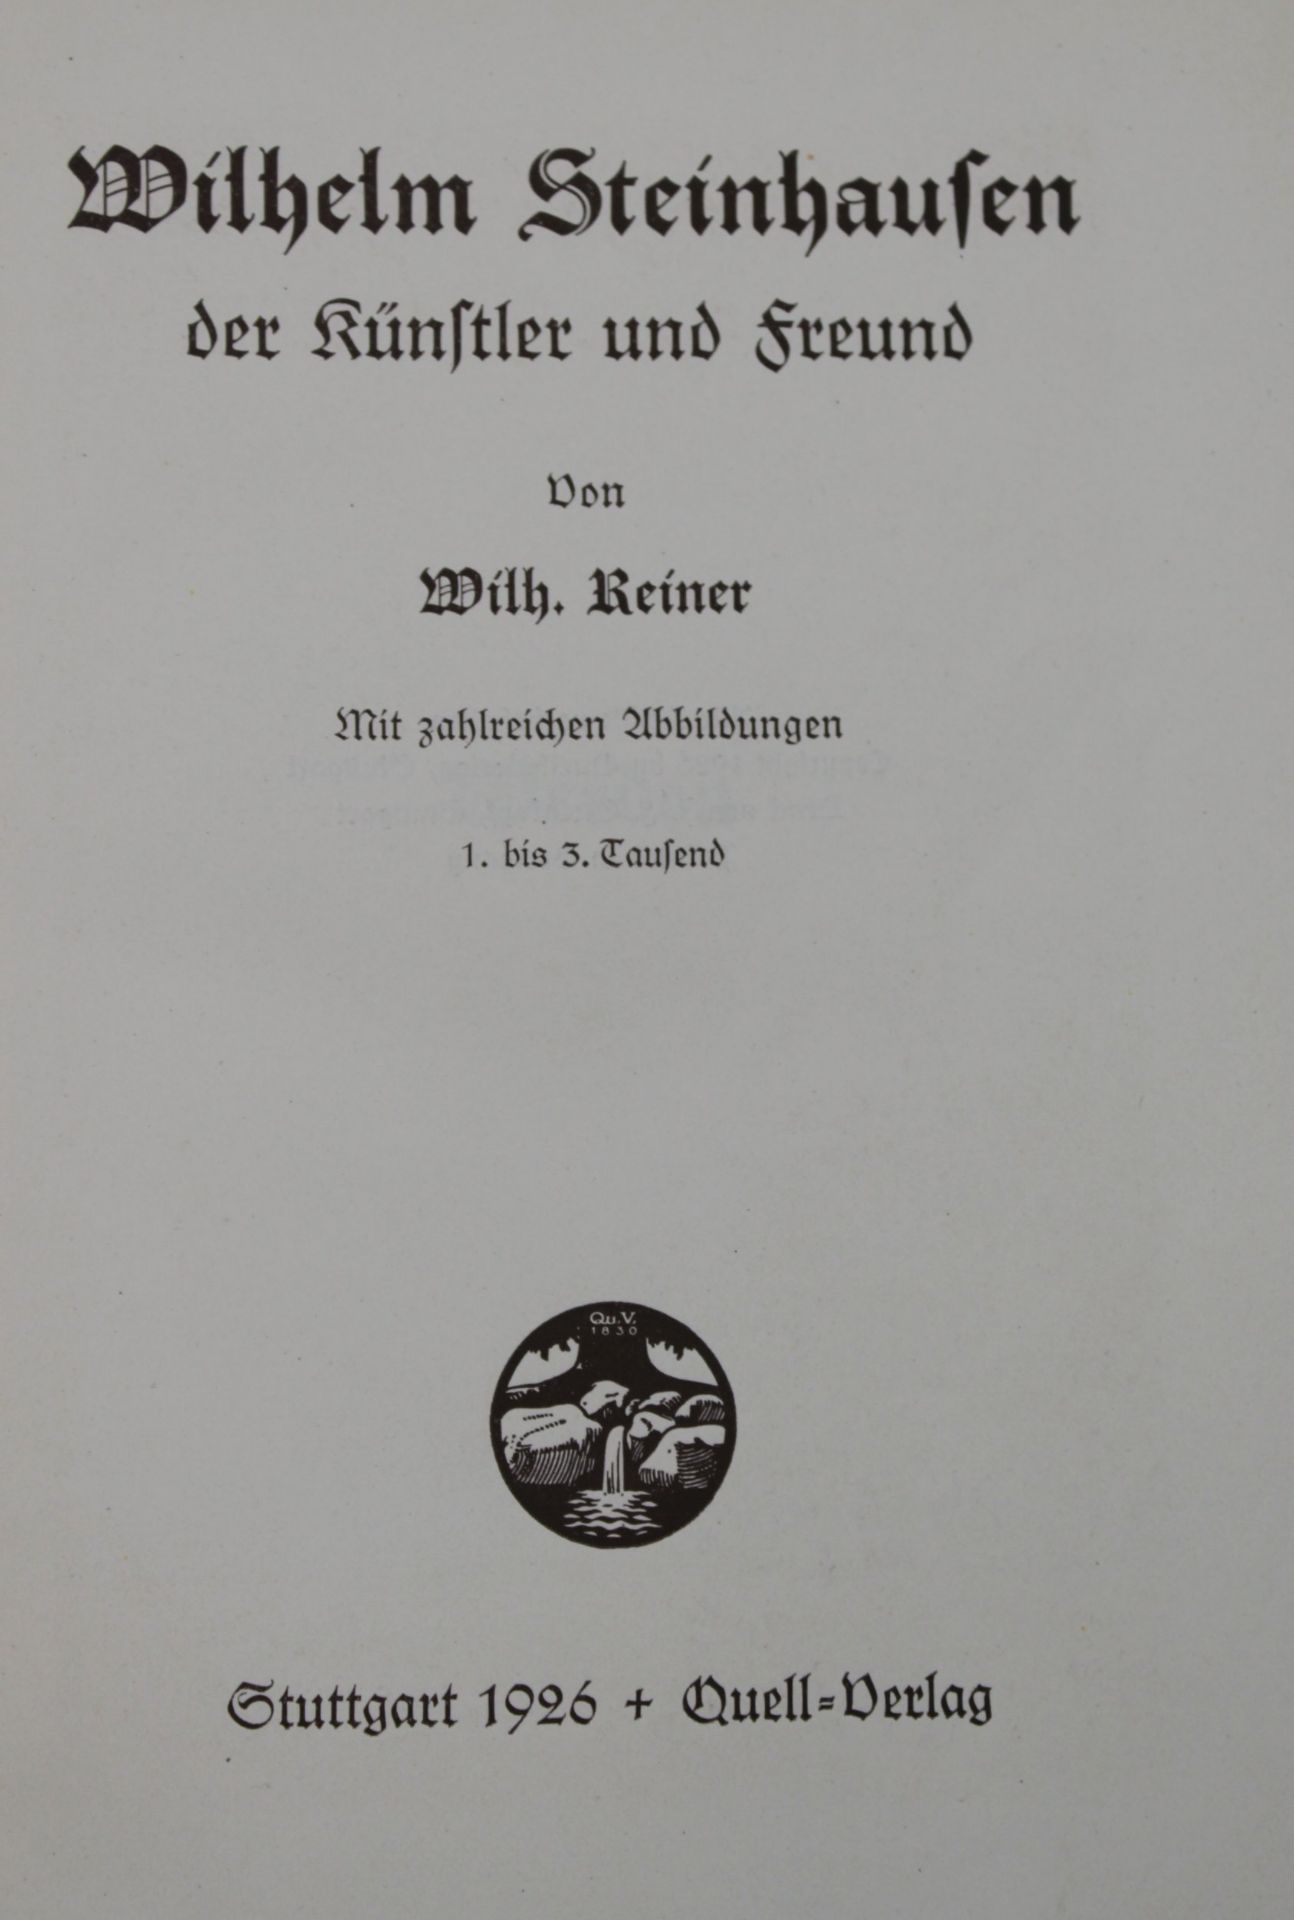 Wilhelm Reiner, Wilhelm Steinhausen der Künstler und Freund, Stuttgart 1926 - Bild 2 aus 3